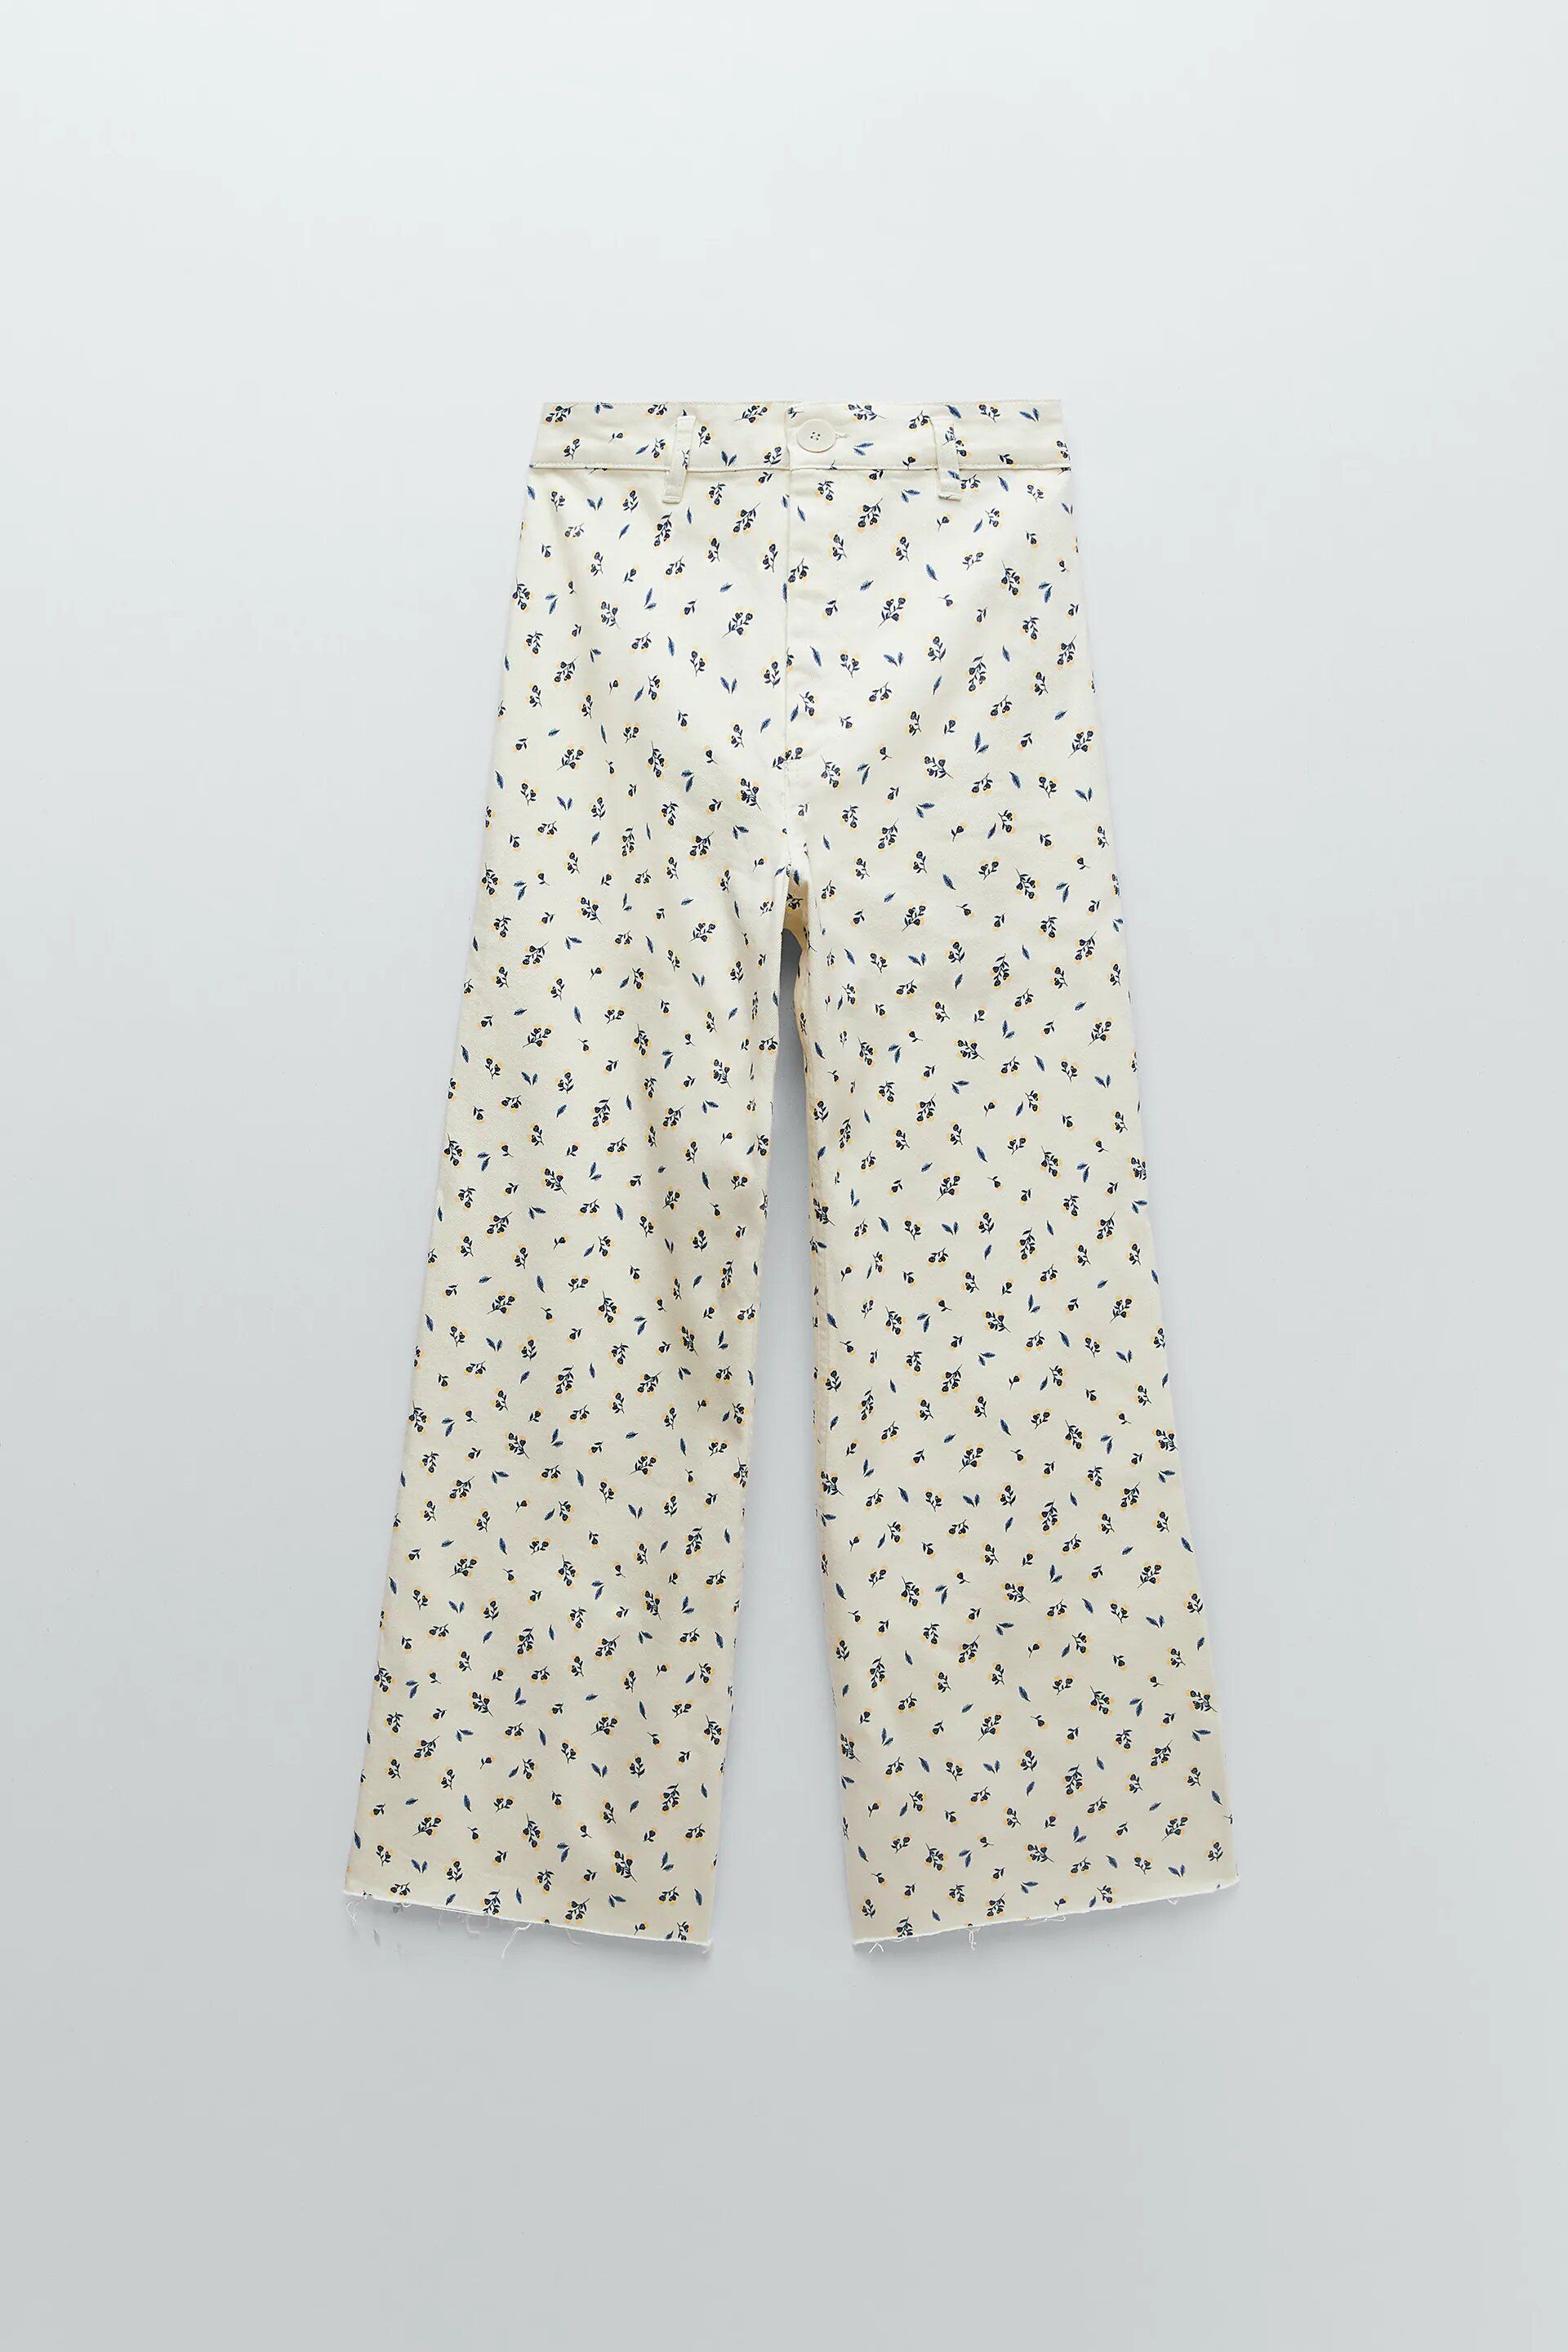 Los pantalones vaqueros de Zara de flores más favorecedores